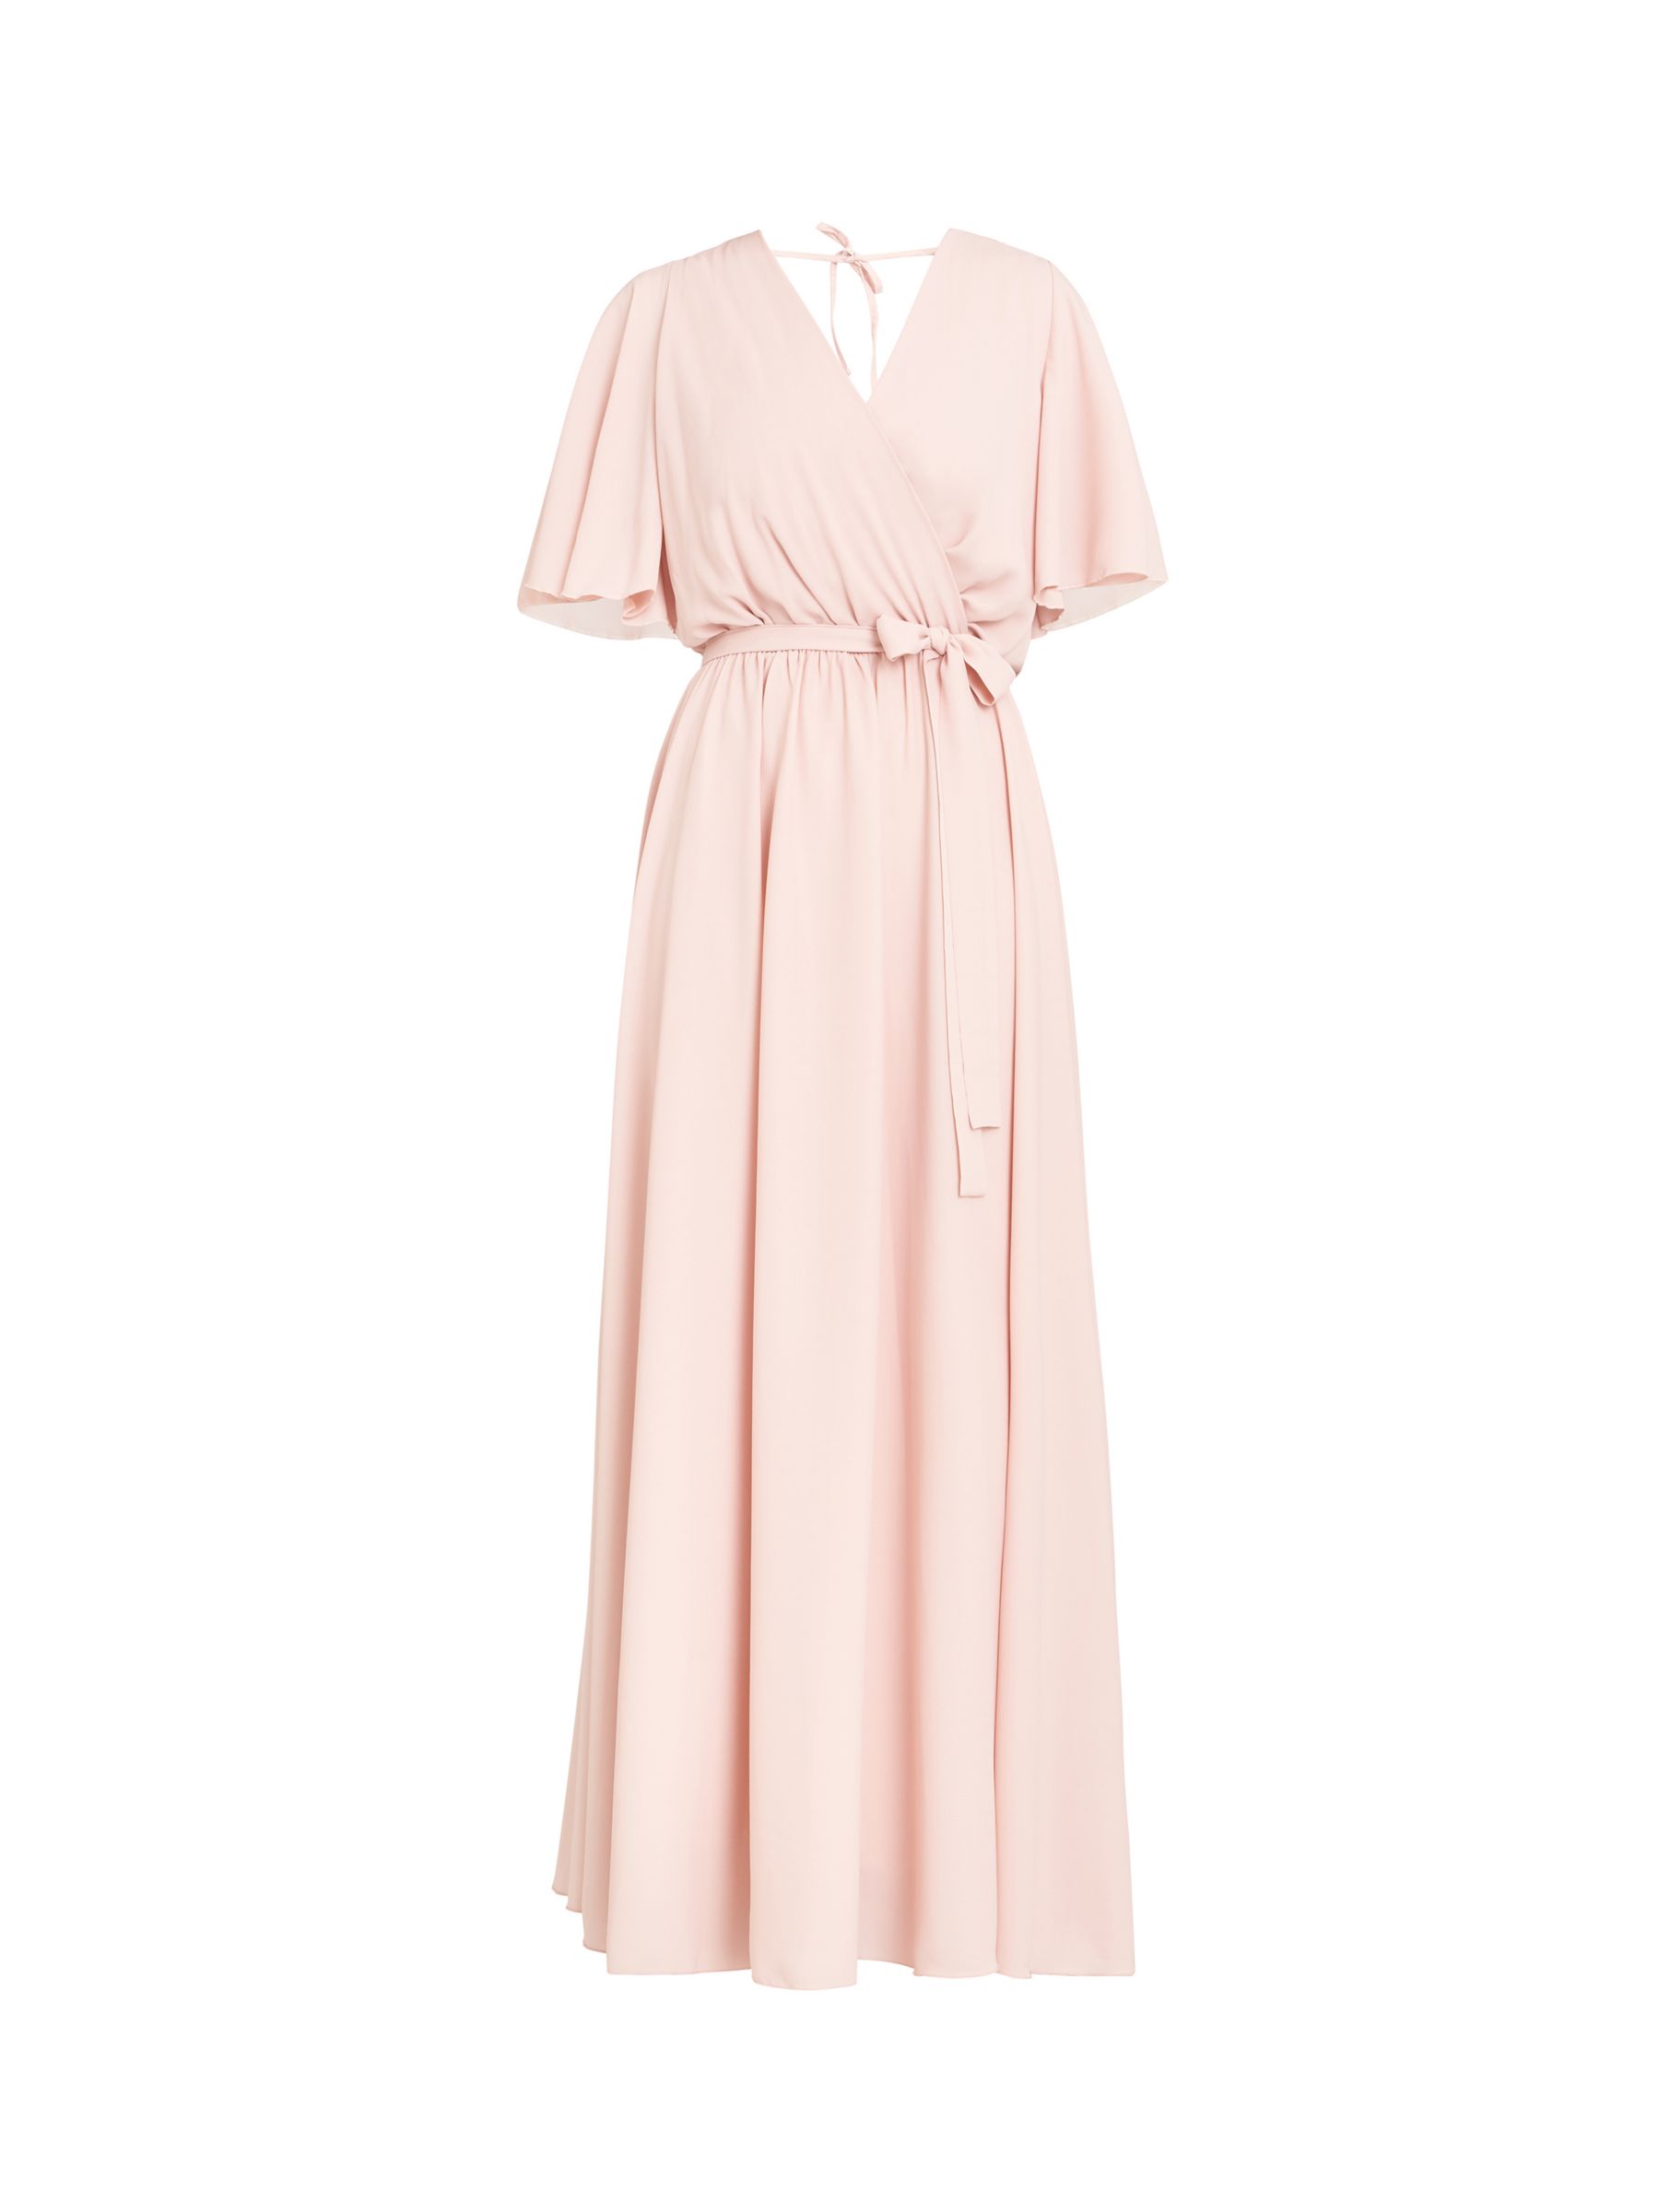 Gina Bacconi Crissy Chiffon Wrap Maxi Dress, Blush at John Lewis & Partners